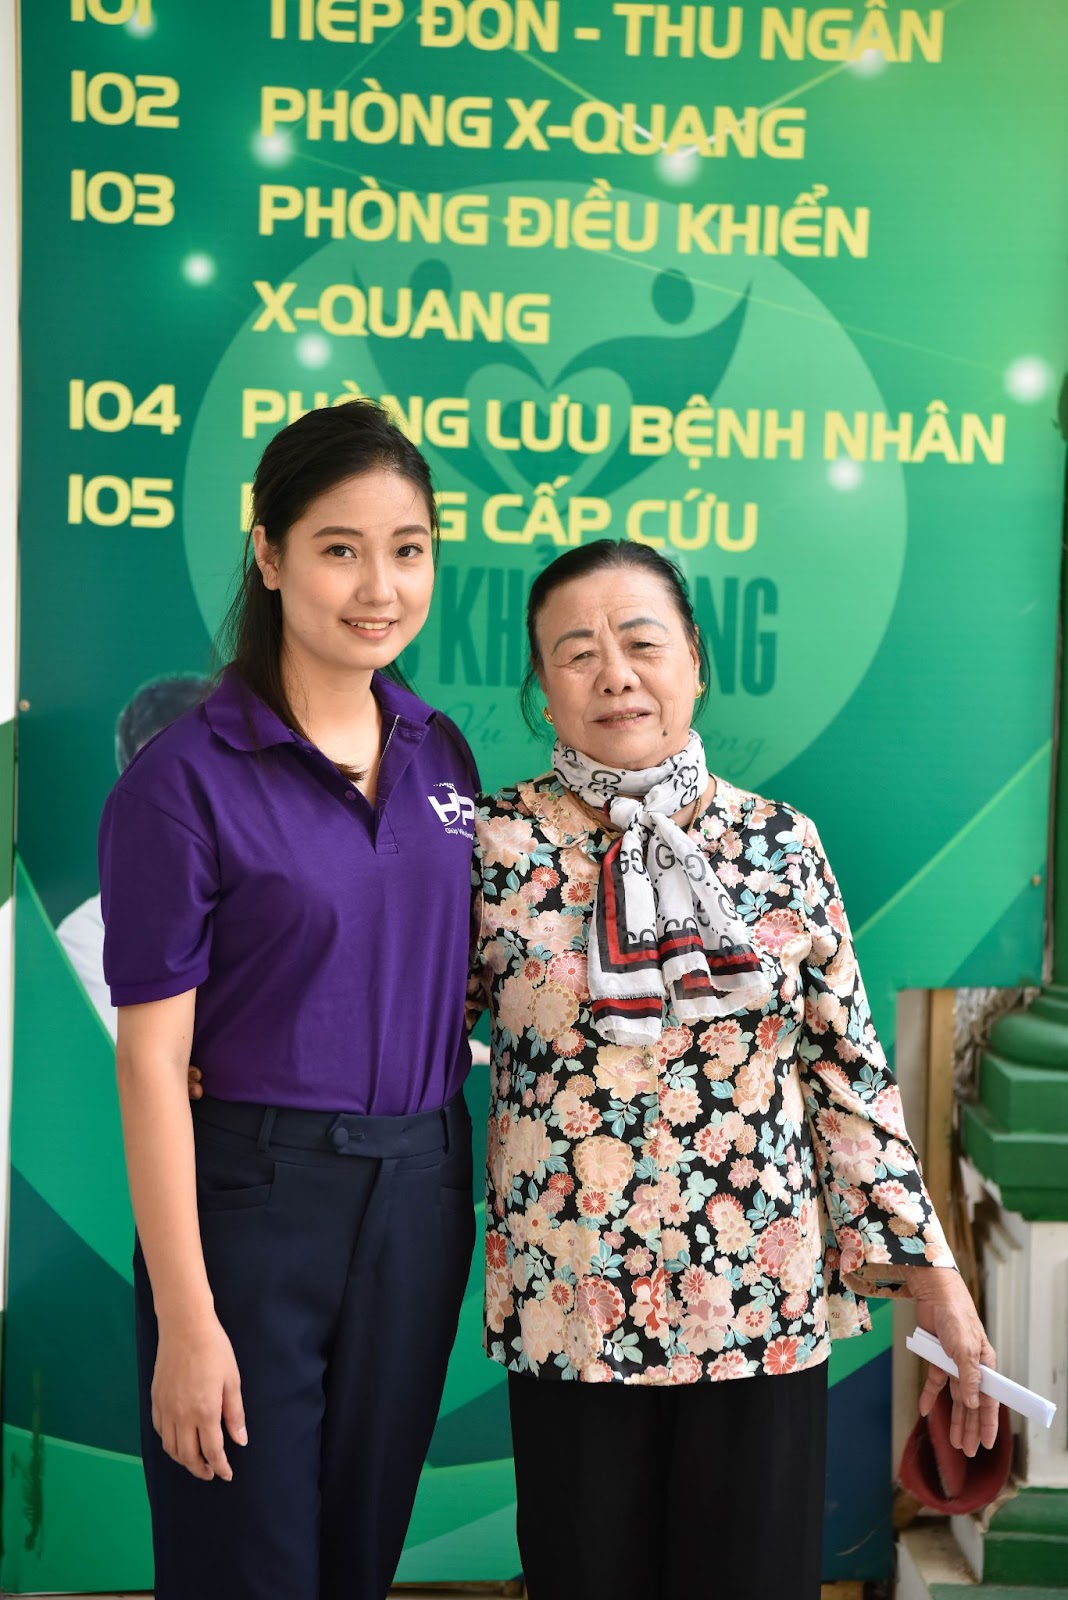  Hồng Phúc cung cấp dịch vụ chăm sóc người bệnh tại Hà Nội